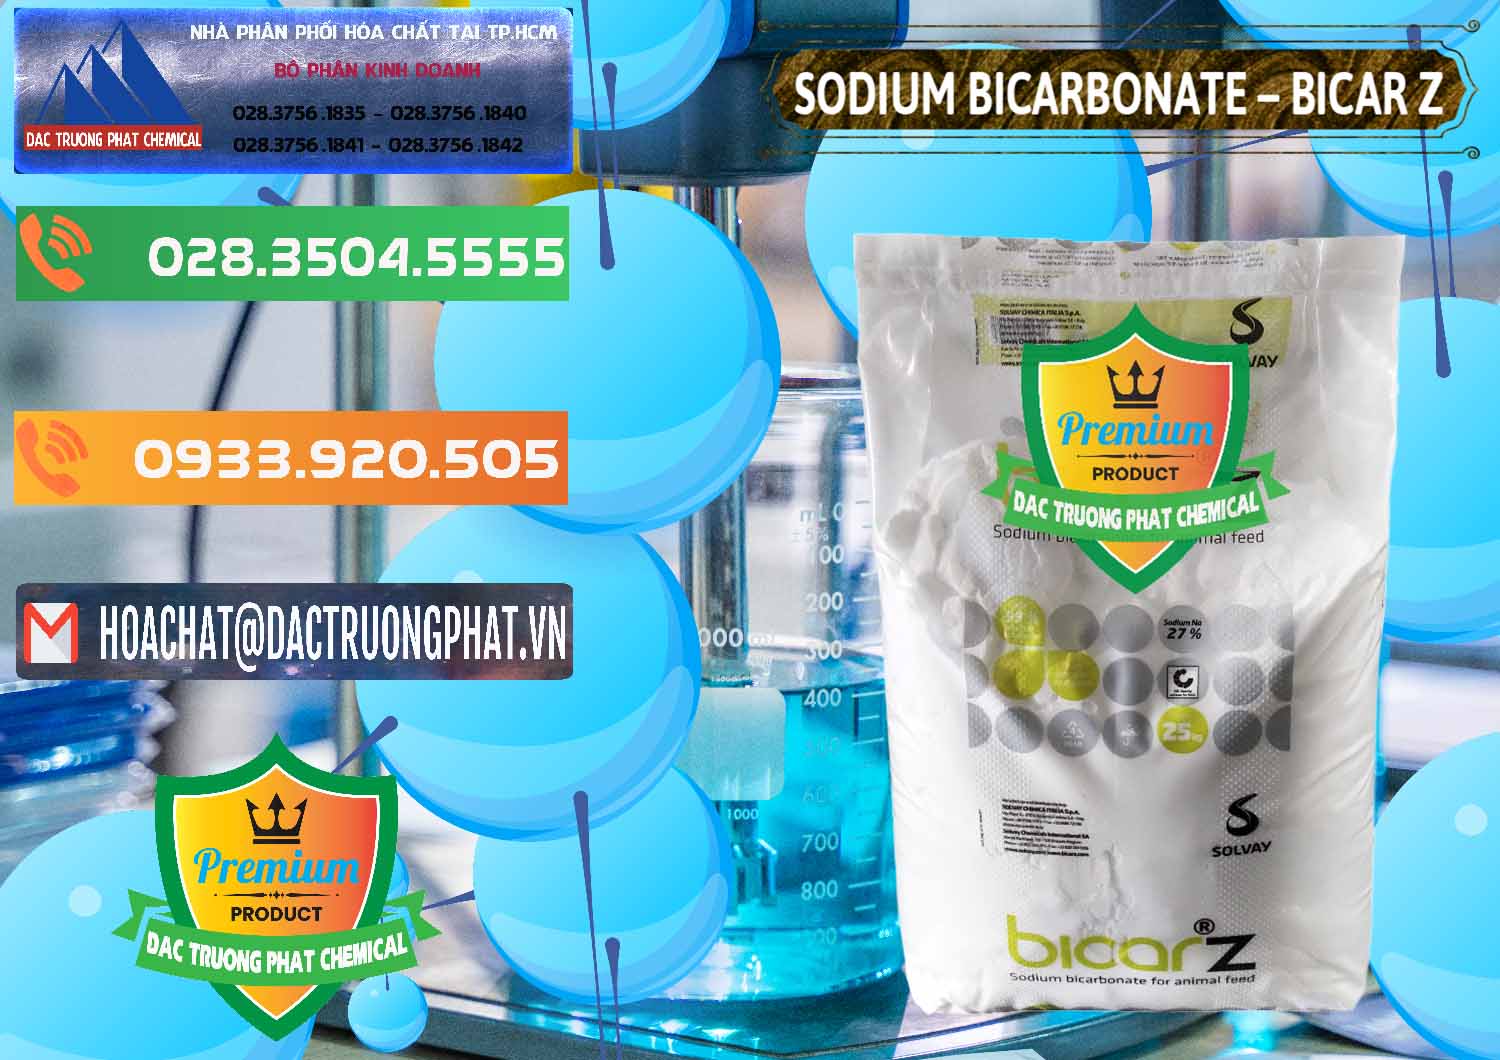 Chuyên bán & cung cấp Sodium Bicarbonate – NaHCO3 Bicar Z Ý Italy Solvay - 0139 - Nơi chuyên nhập khẩu ( cung cấp ) hóa chất tại TP.HCM - hoachatxulynuoc.com.vn